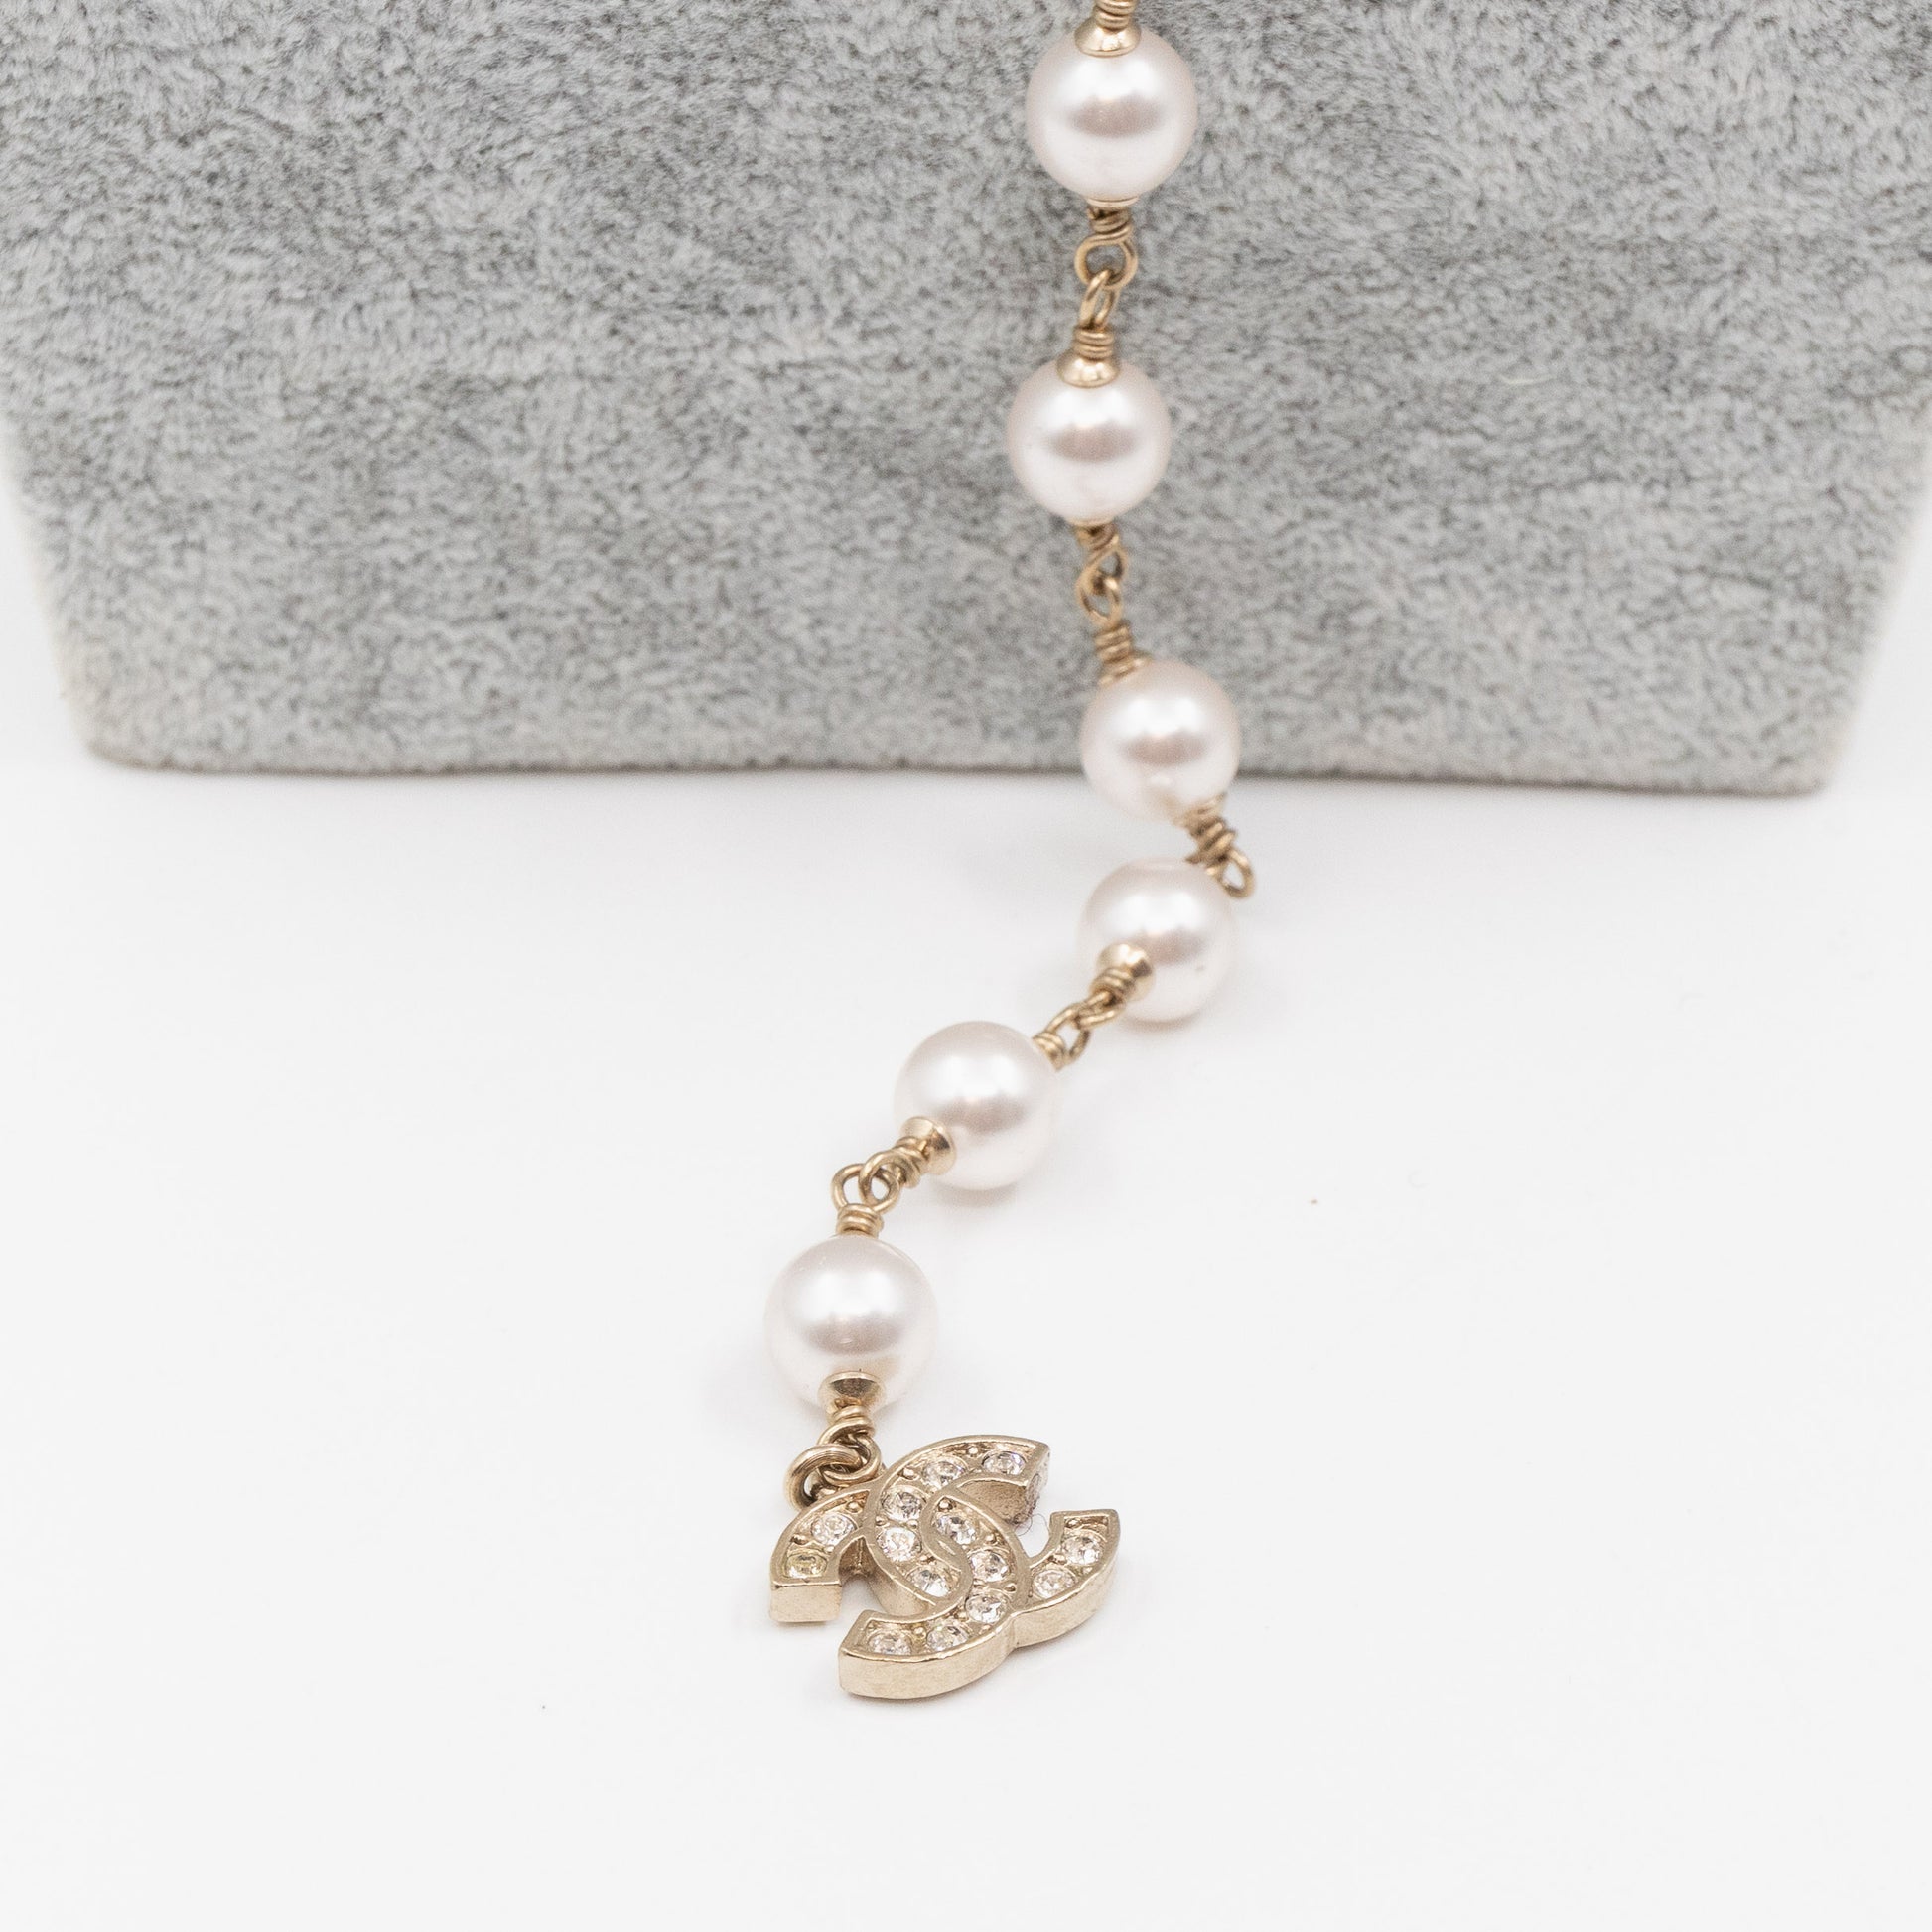 Stella Chanel Pearl Necklace (Pre-order)